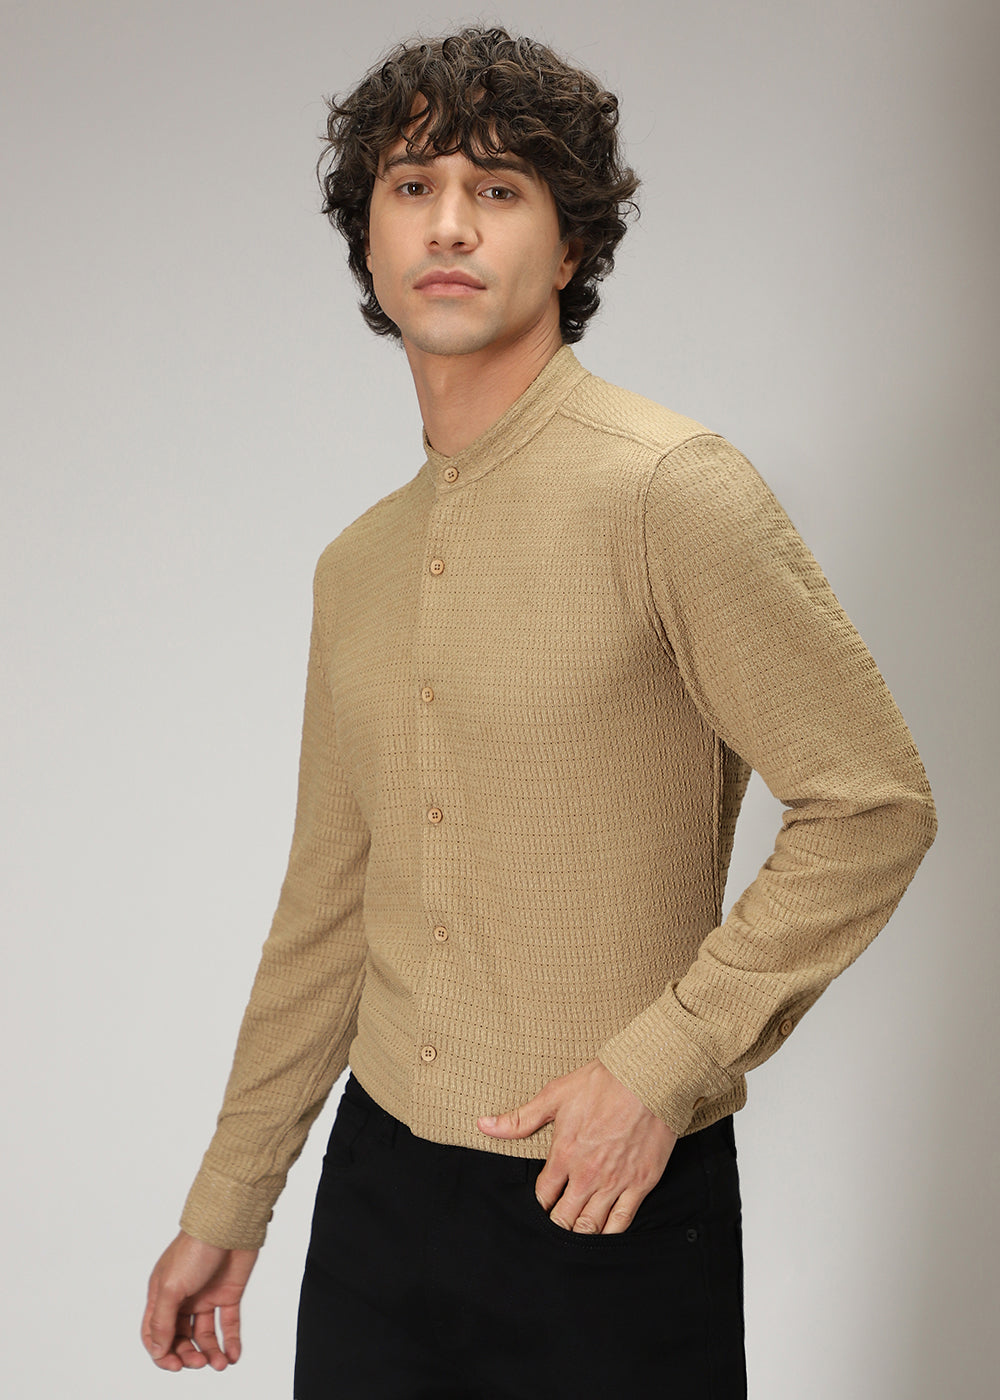 Tan Brown Knitted Crochet Shirt